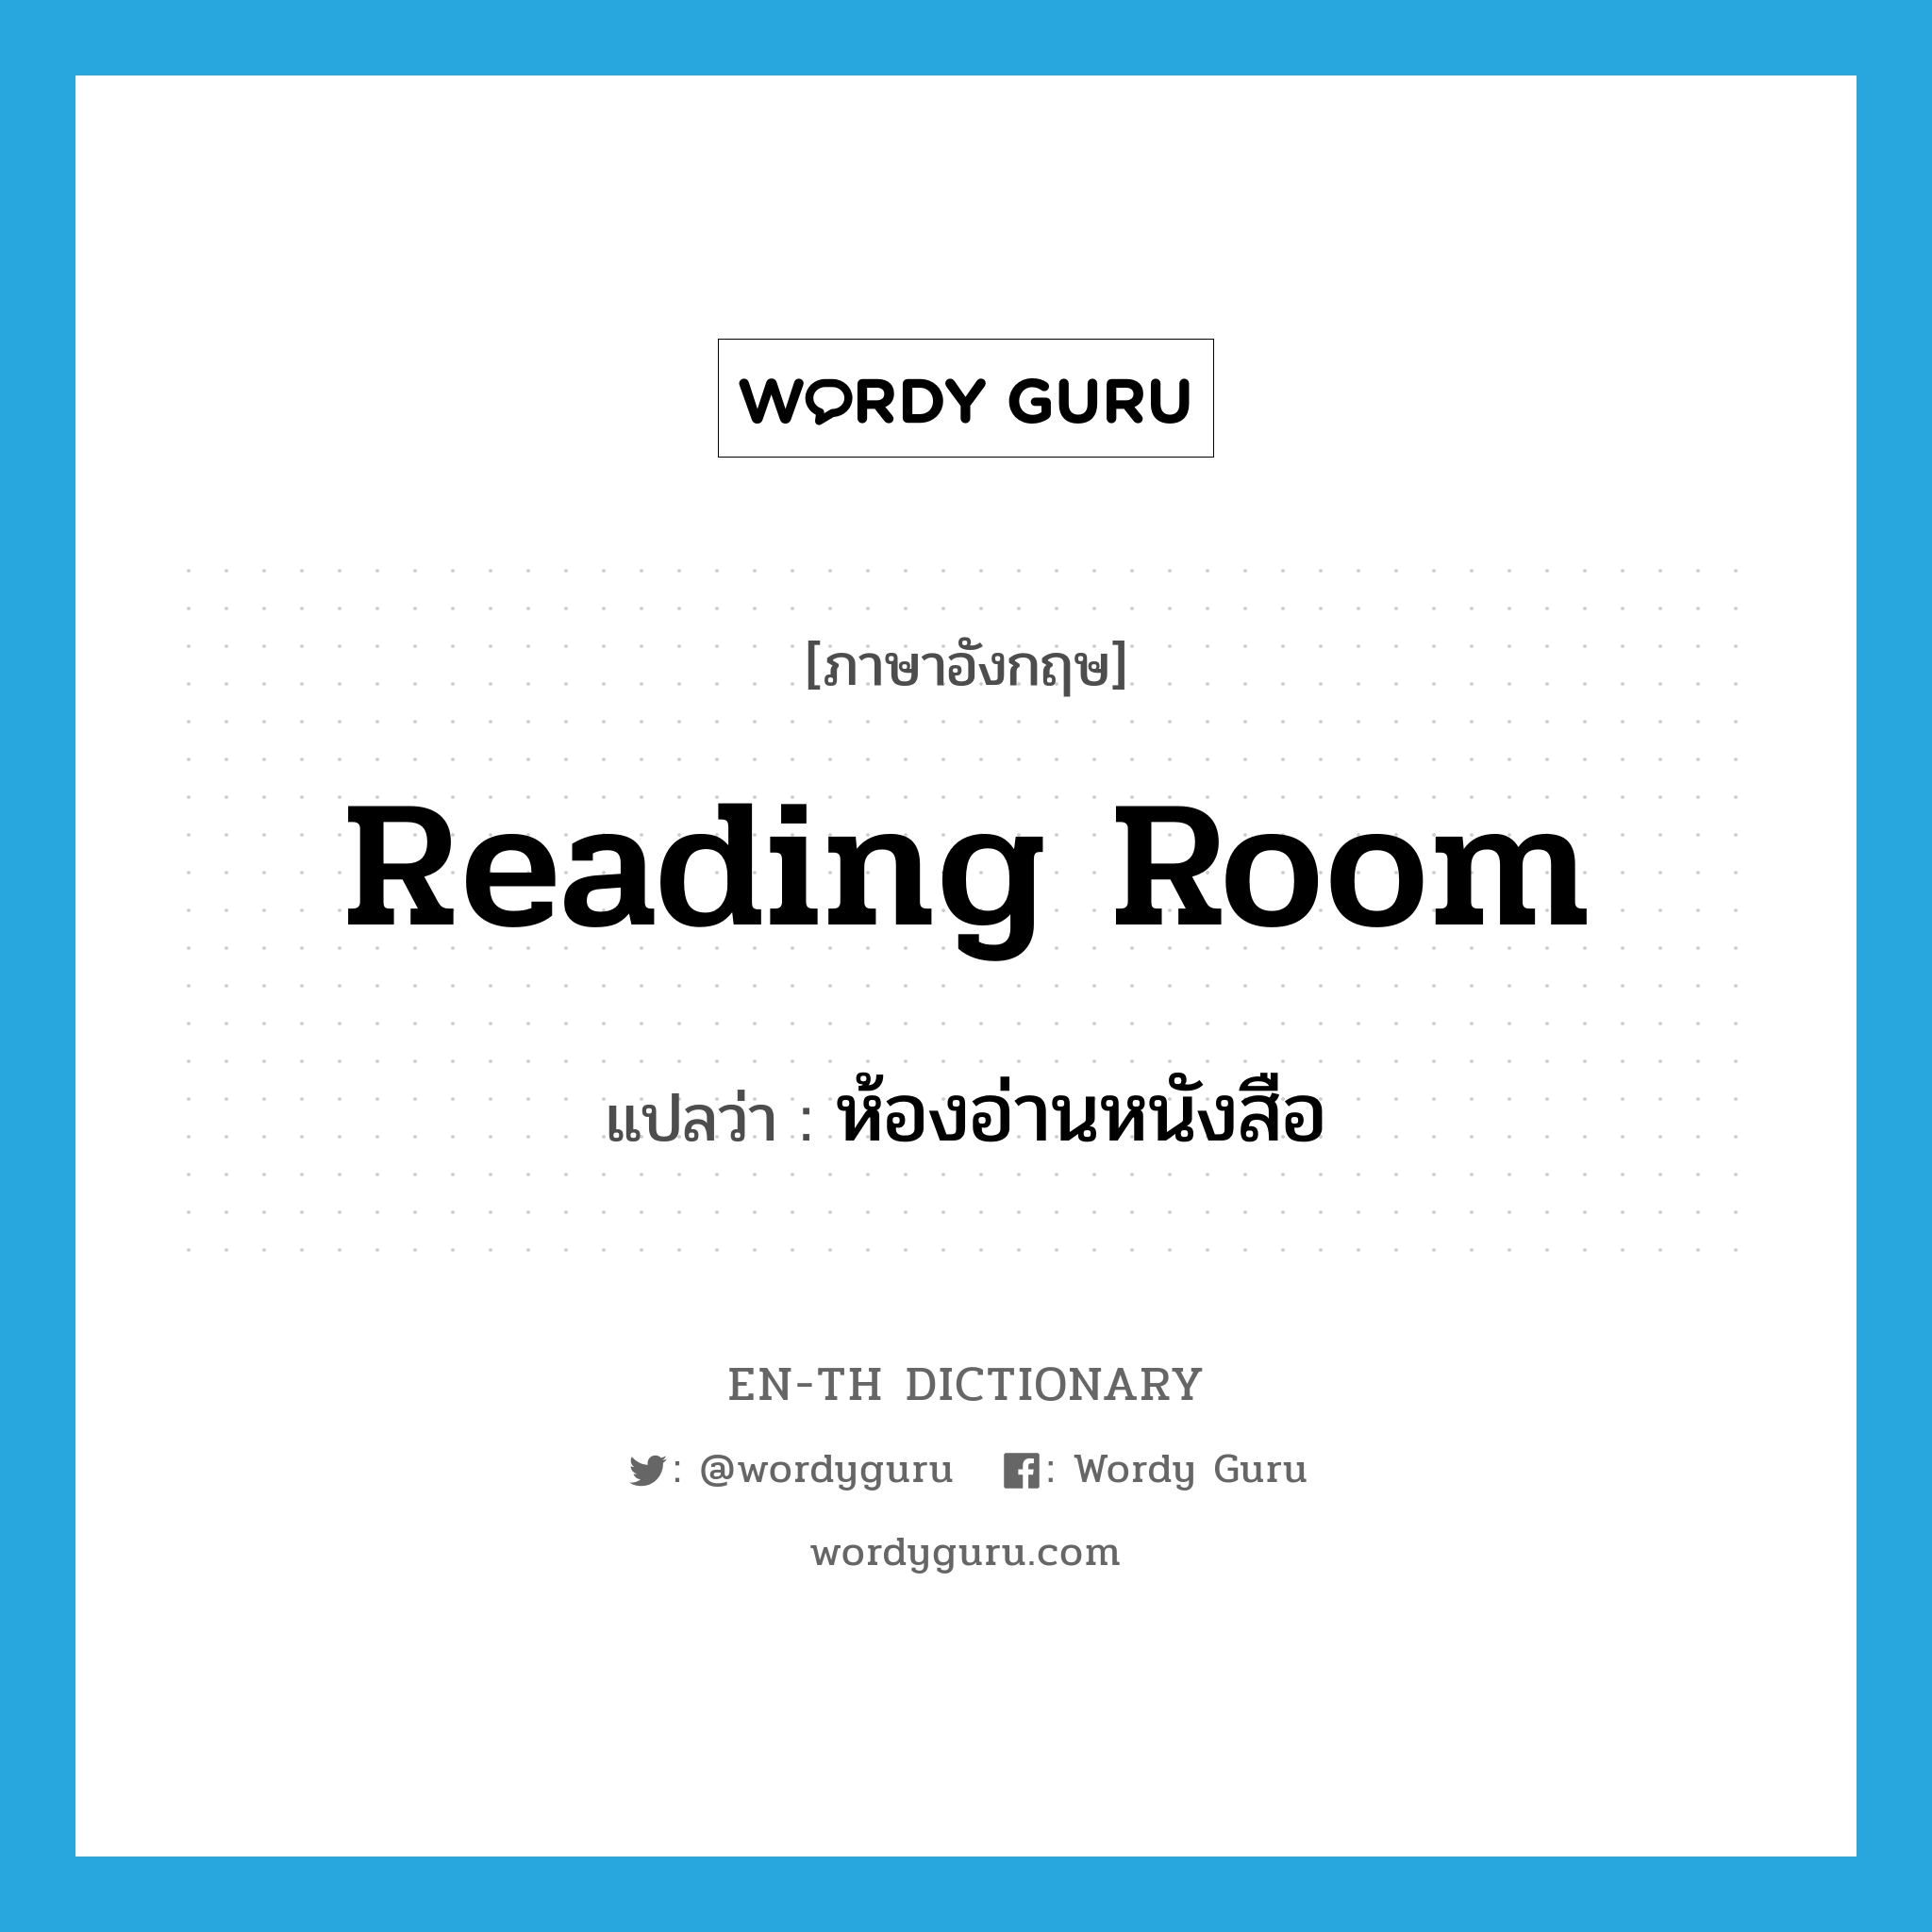 reading room แปลว่า?, คำศัพท์ภาษาอังกฤษ reading room แปลว่า ห้องอ่านหนังสือ ประเภท N หมวด N